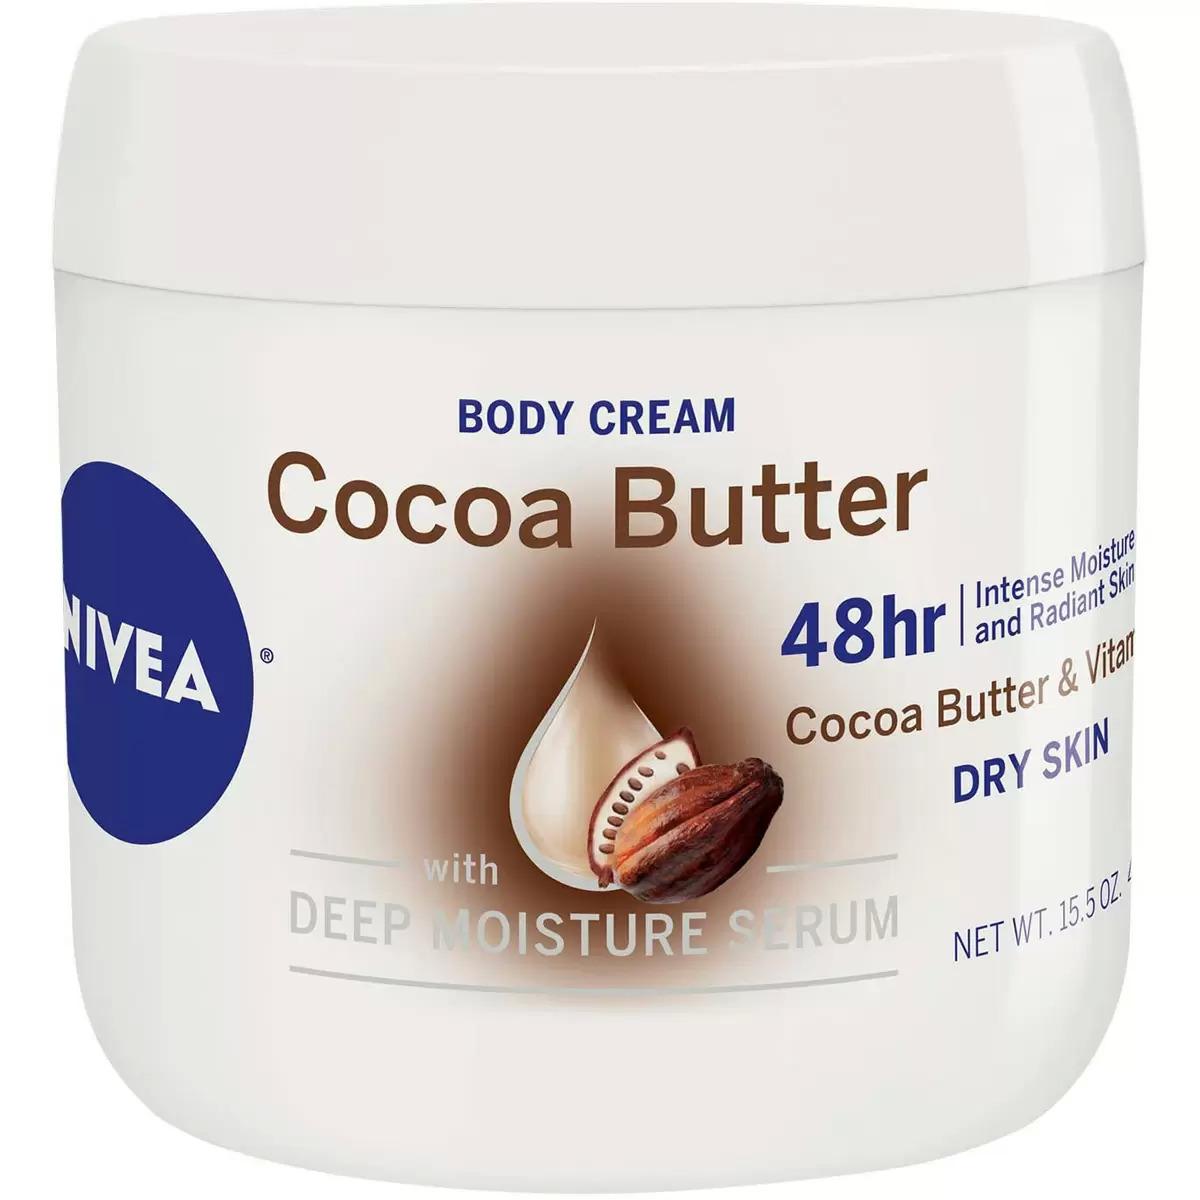 NIVEA Cocoa Butter Body Cream for $3.55 Shipped